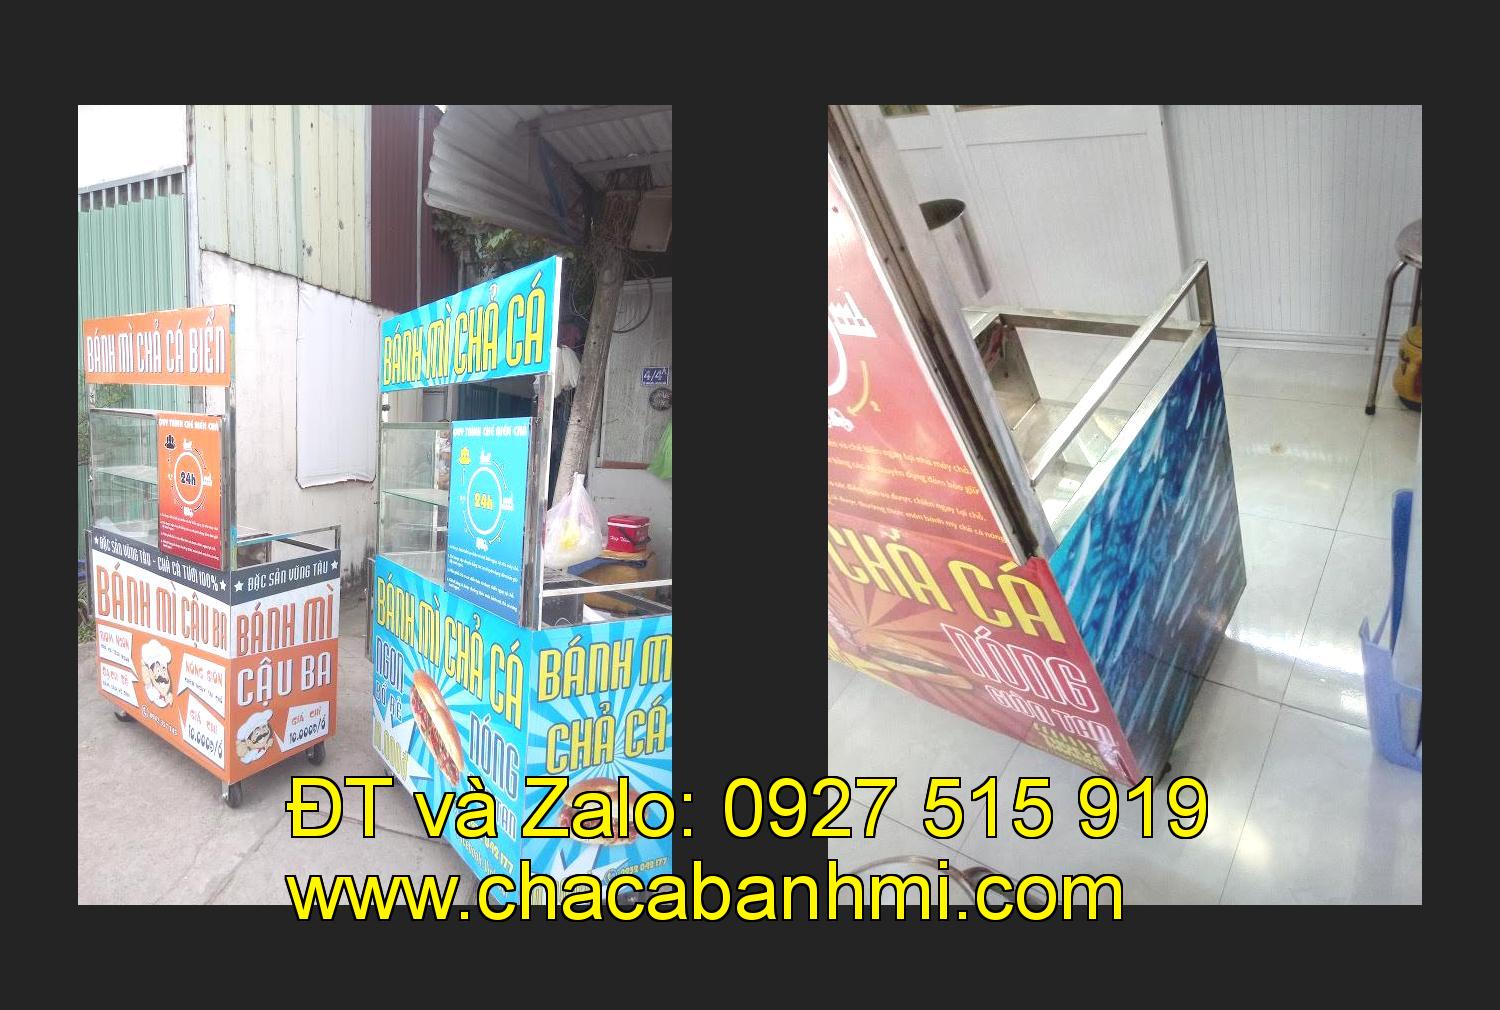 Bán xe bánh mì chả cá tại tỉnh Quảng Ngãi